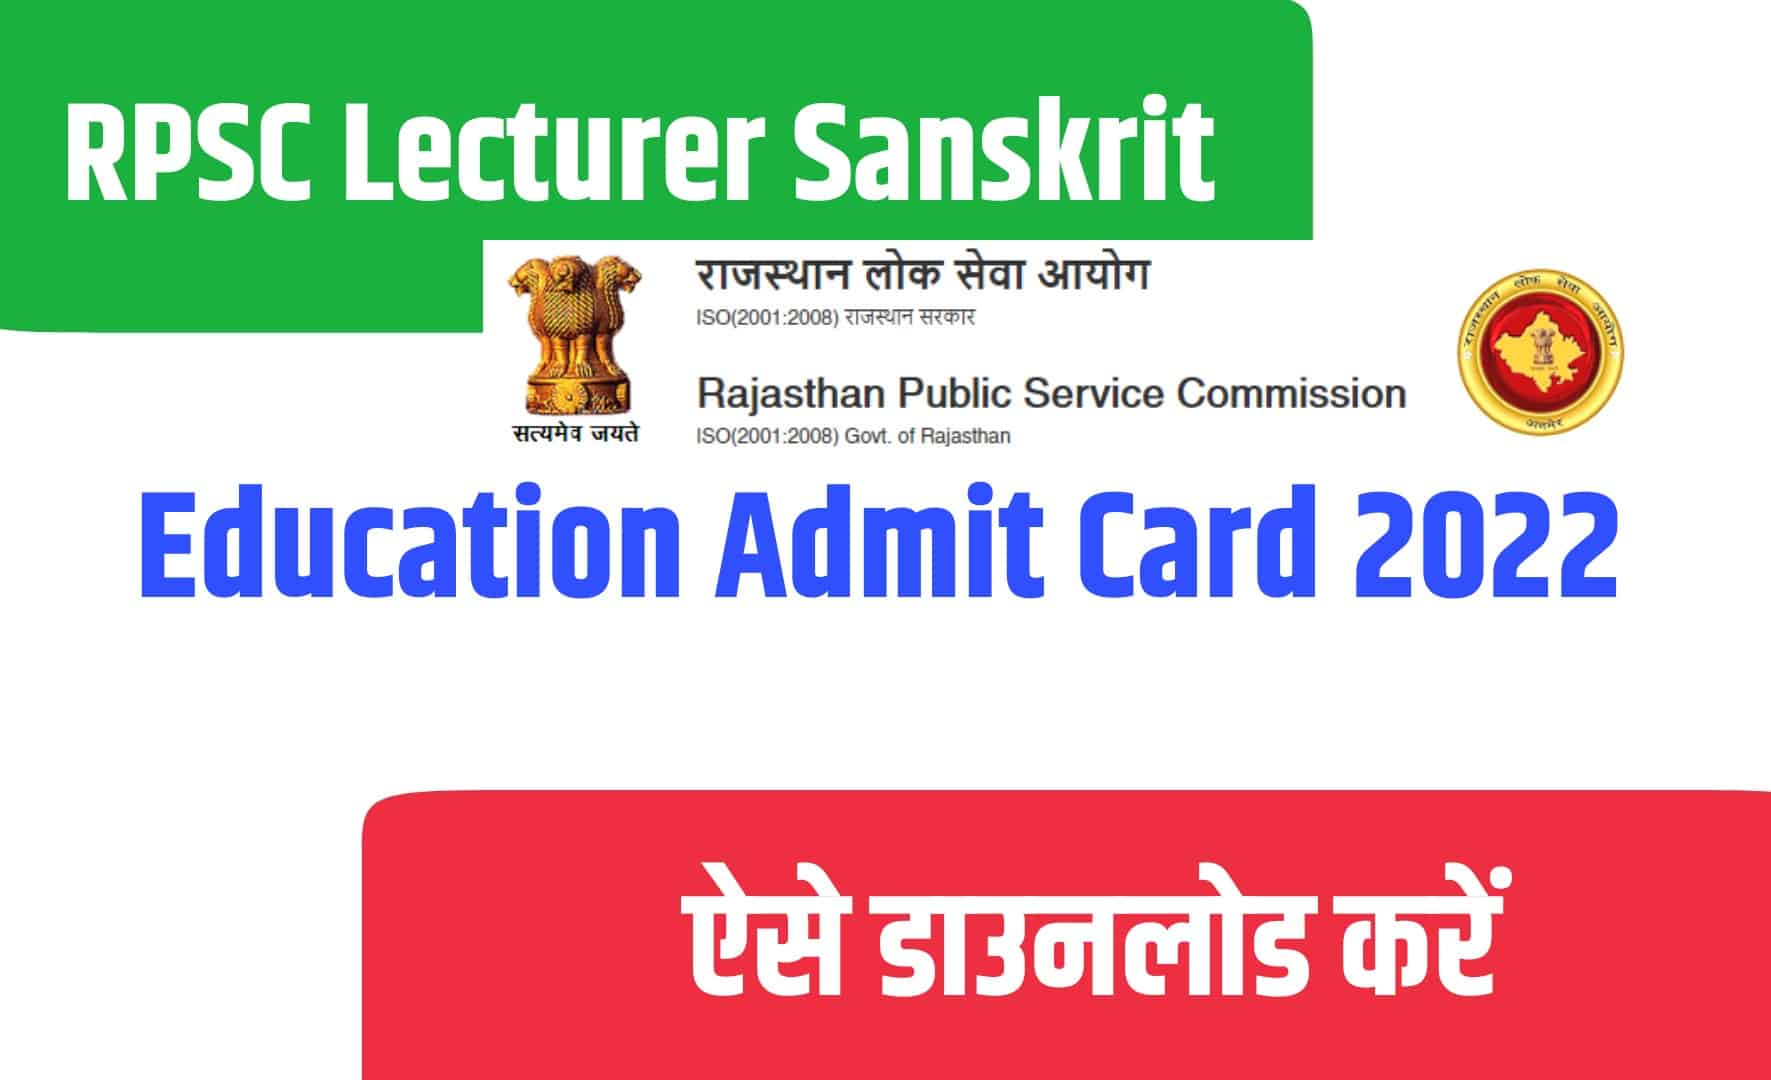 RPSC Lecturer Sanskrit Education Admit Card 2022 | आरपीएससी लेक्चरर संस्कृत एजुकेशन एडमिट कार्ड जारी